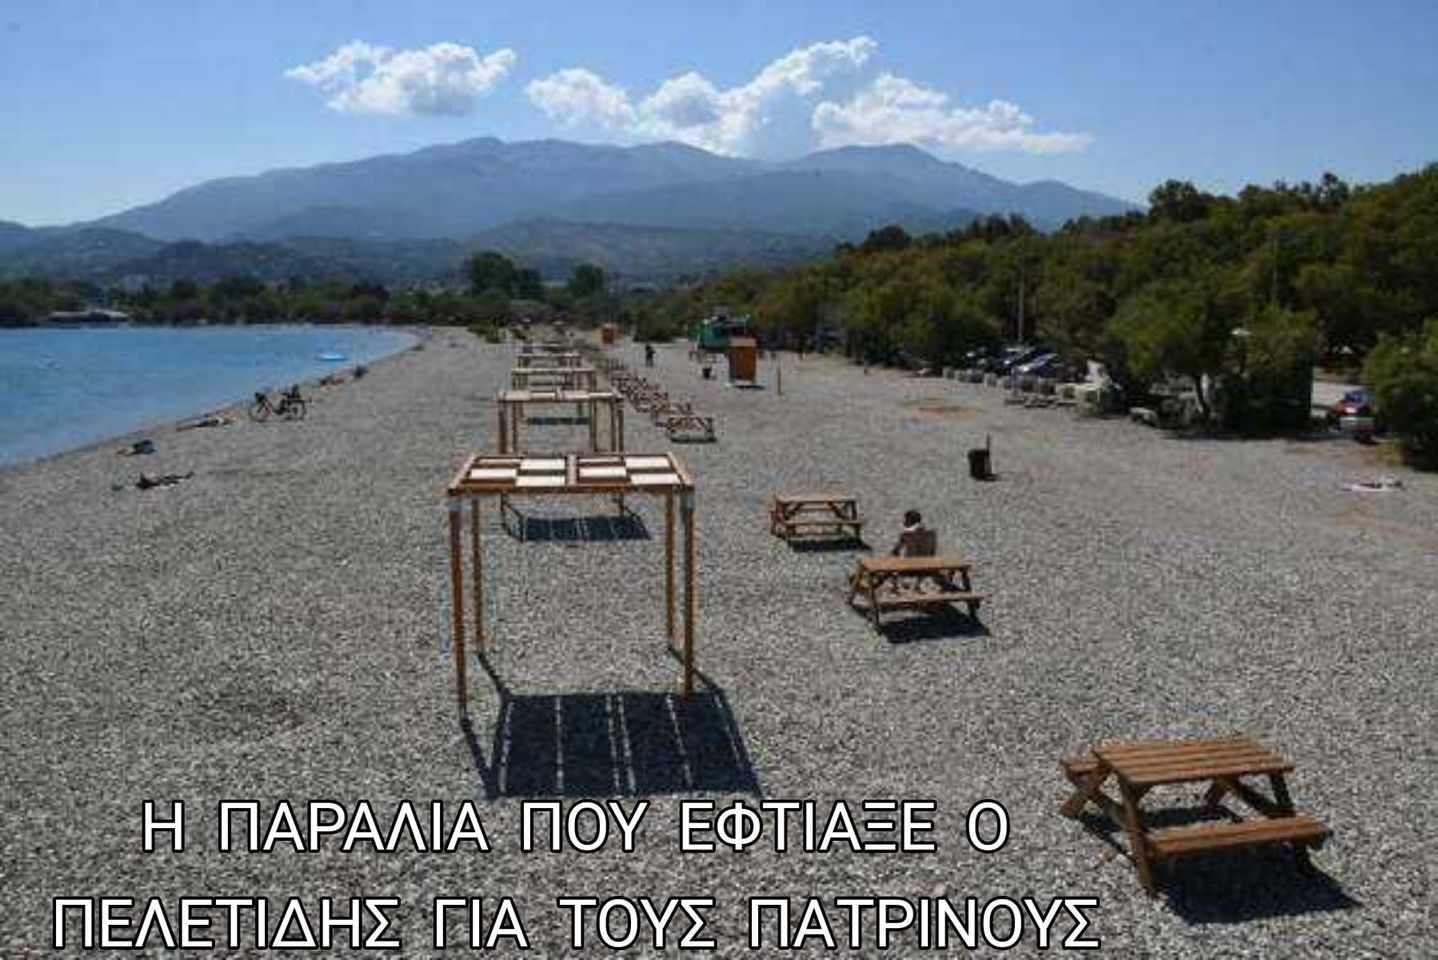 Η παραλία που έφτιαξε ο Δήμαρχος κ. Πελετίδης για τους Πατρινούς!!!